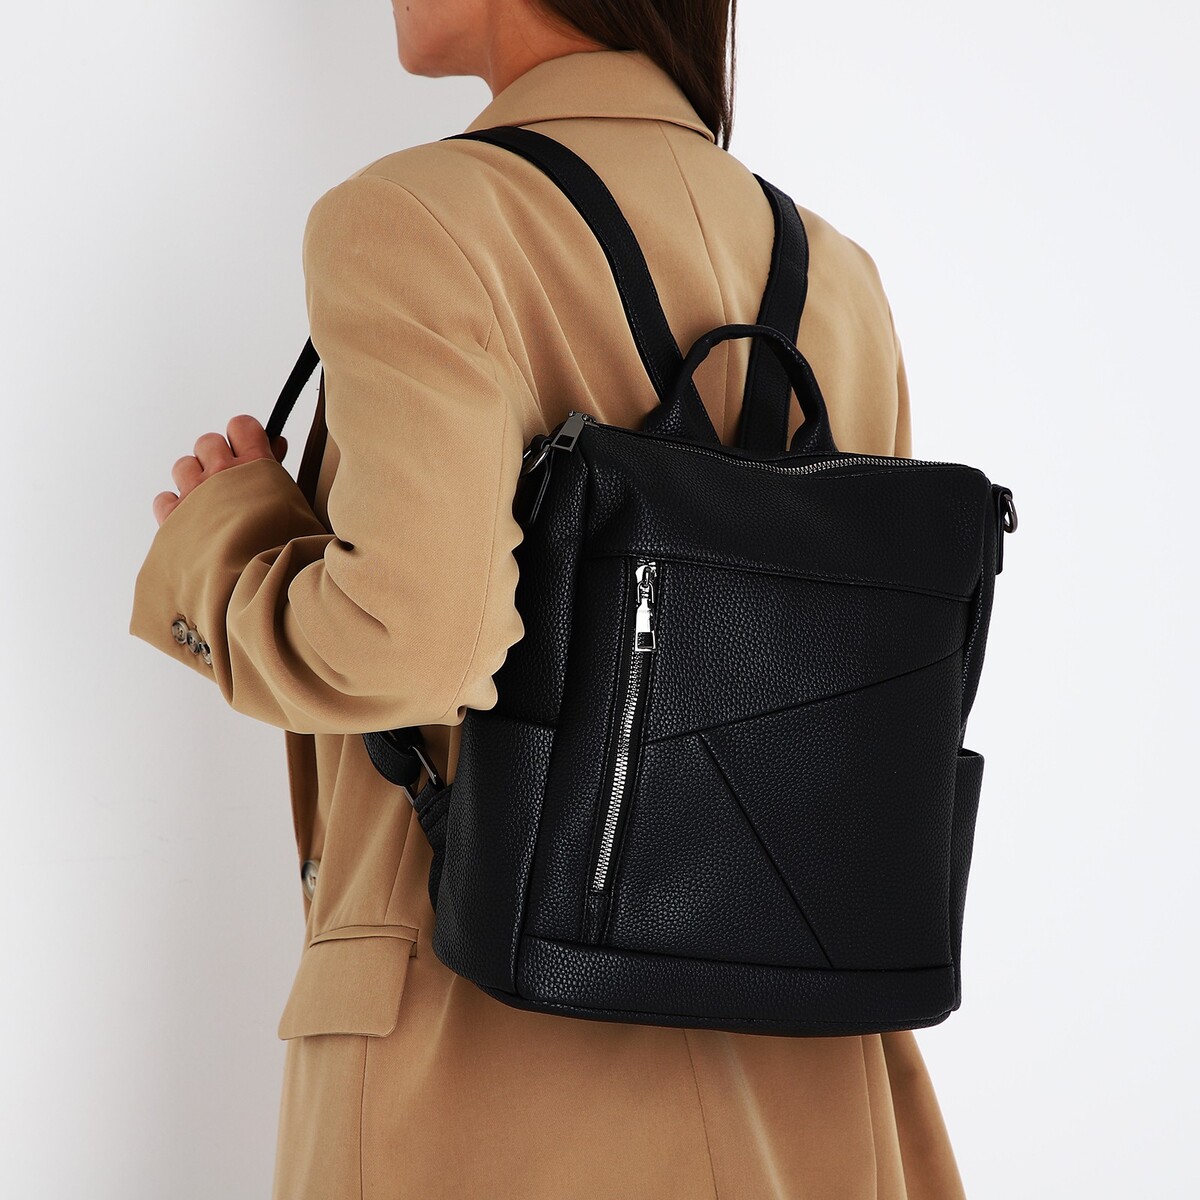 Рюкзак женский из искусственной кожи на молнии, 4 кармана, цвет черный рюкзак городской из искусственной кожи на молнии 3 кармана